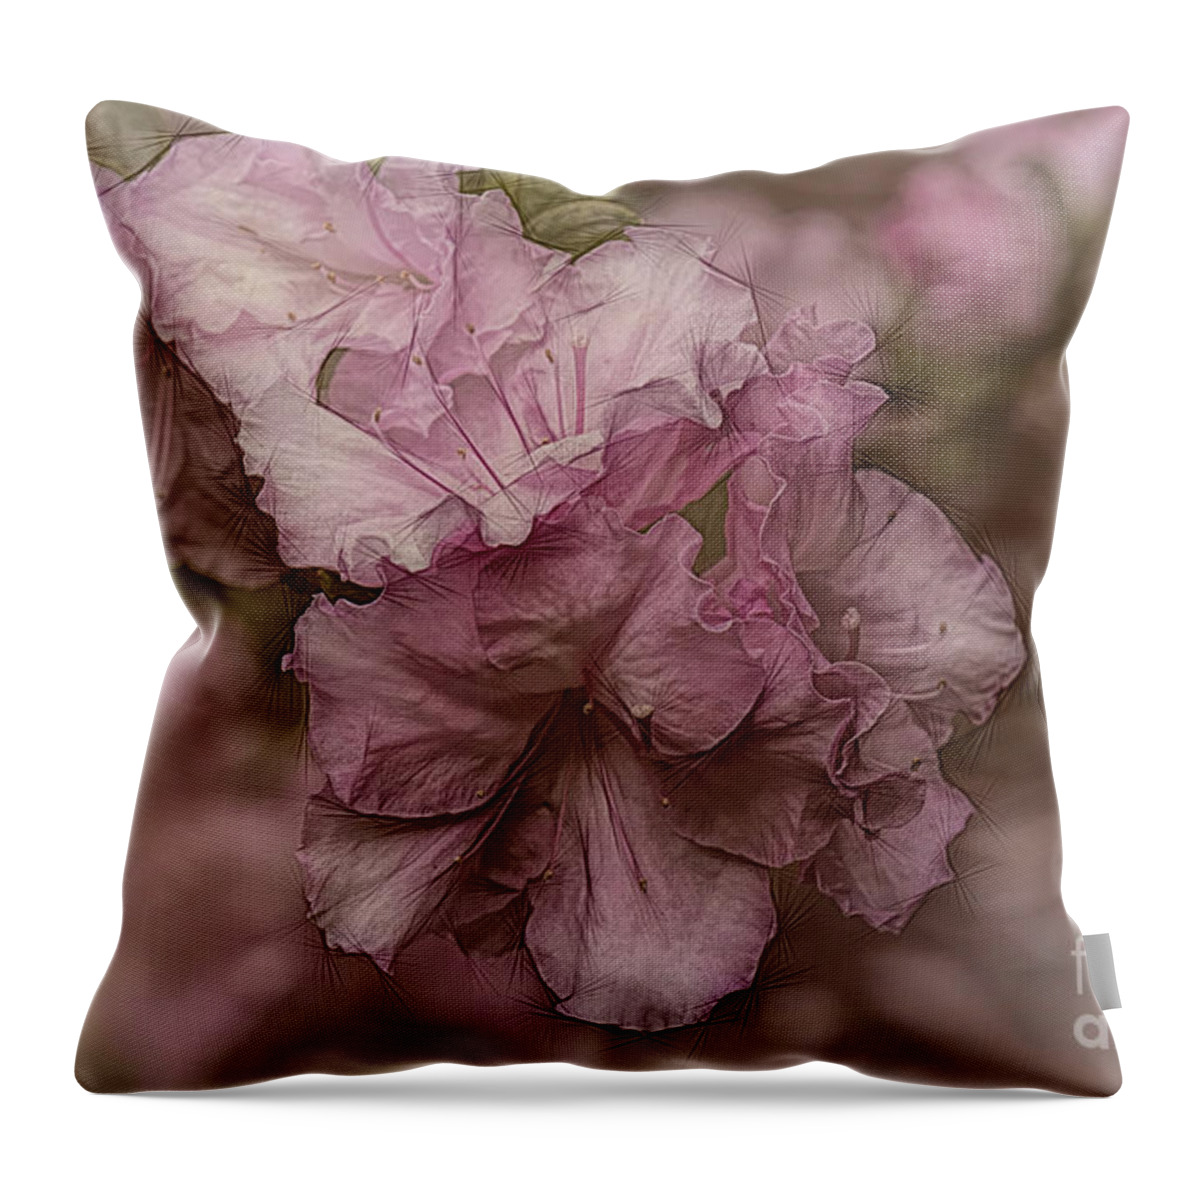 Azalea Throw Pillow featuring the photograph Dusky Pink Azalea by Elaine Teague